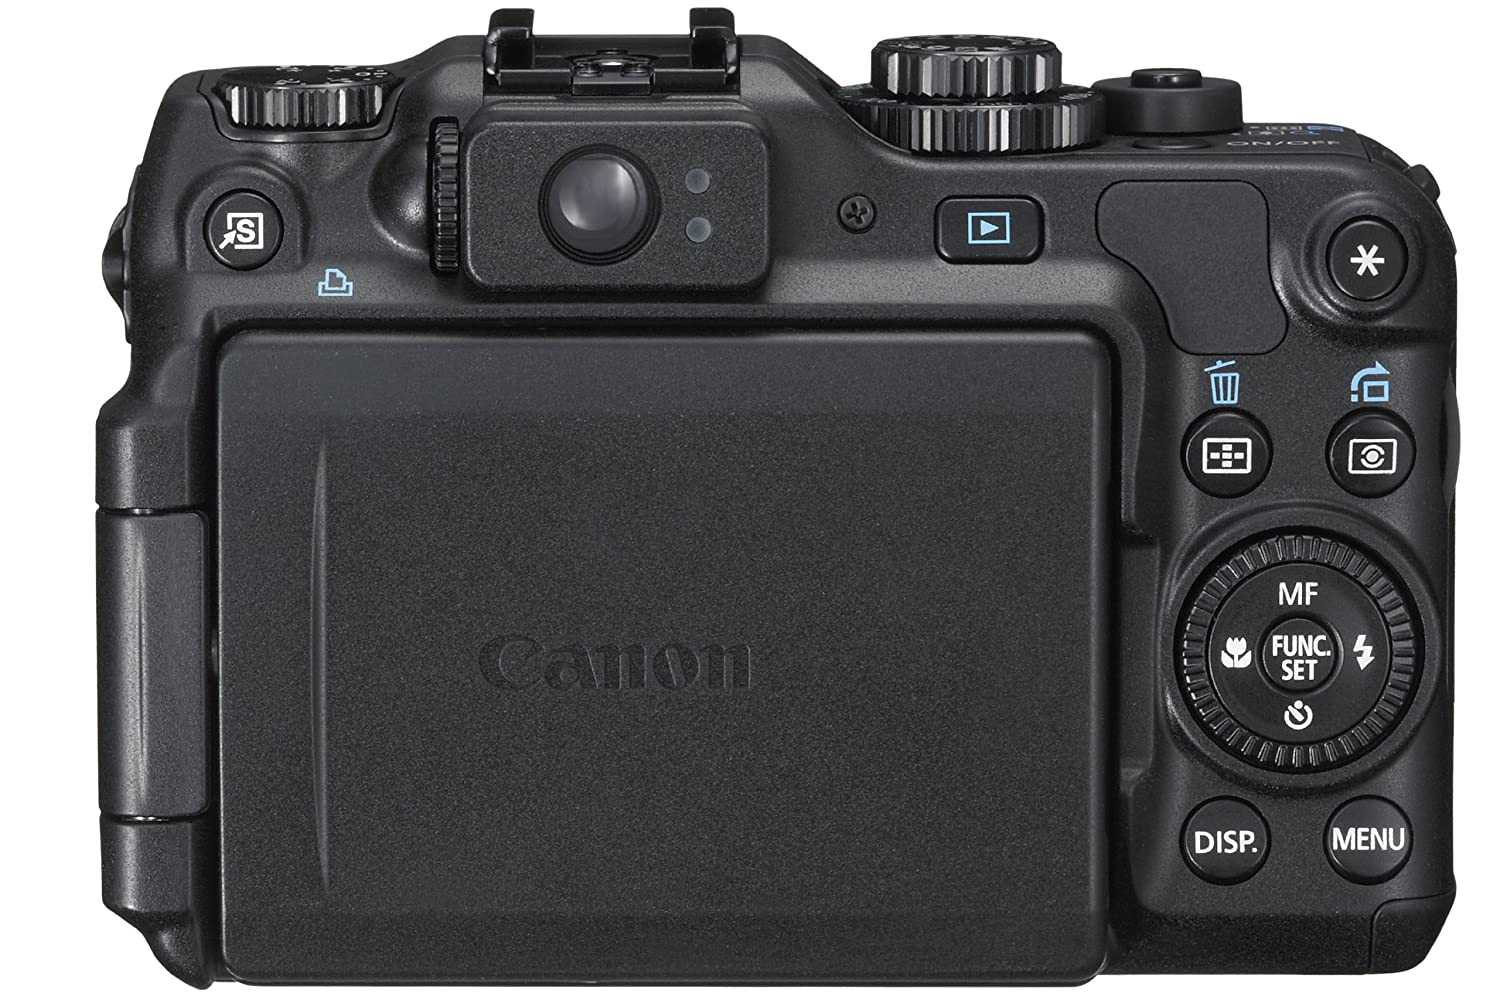 Canon powershot g1 x купить по акционной цене , отзывы и обзоры.